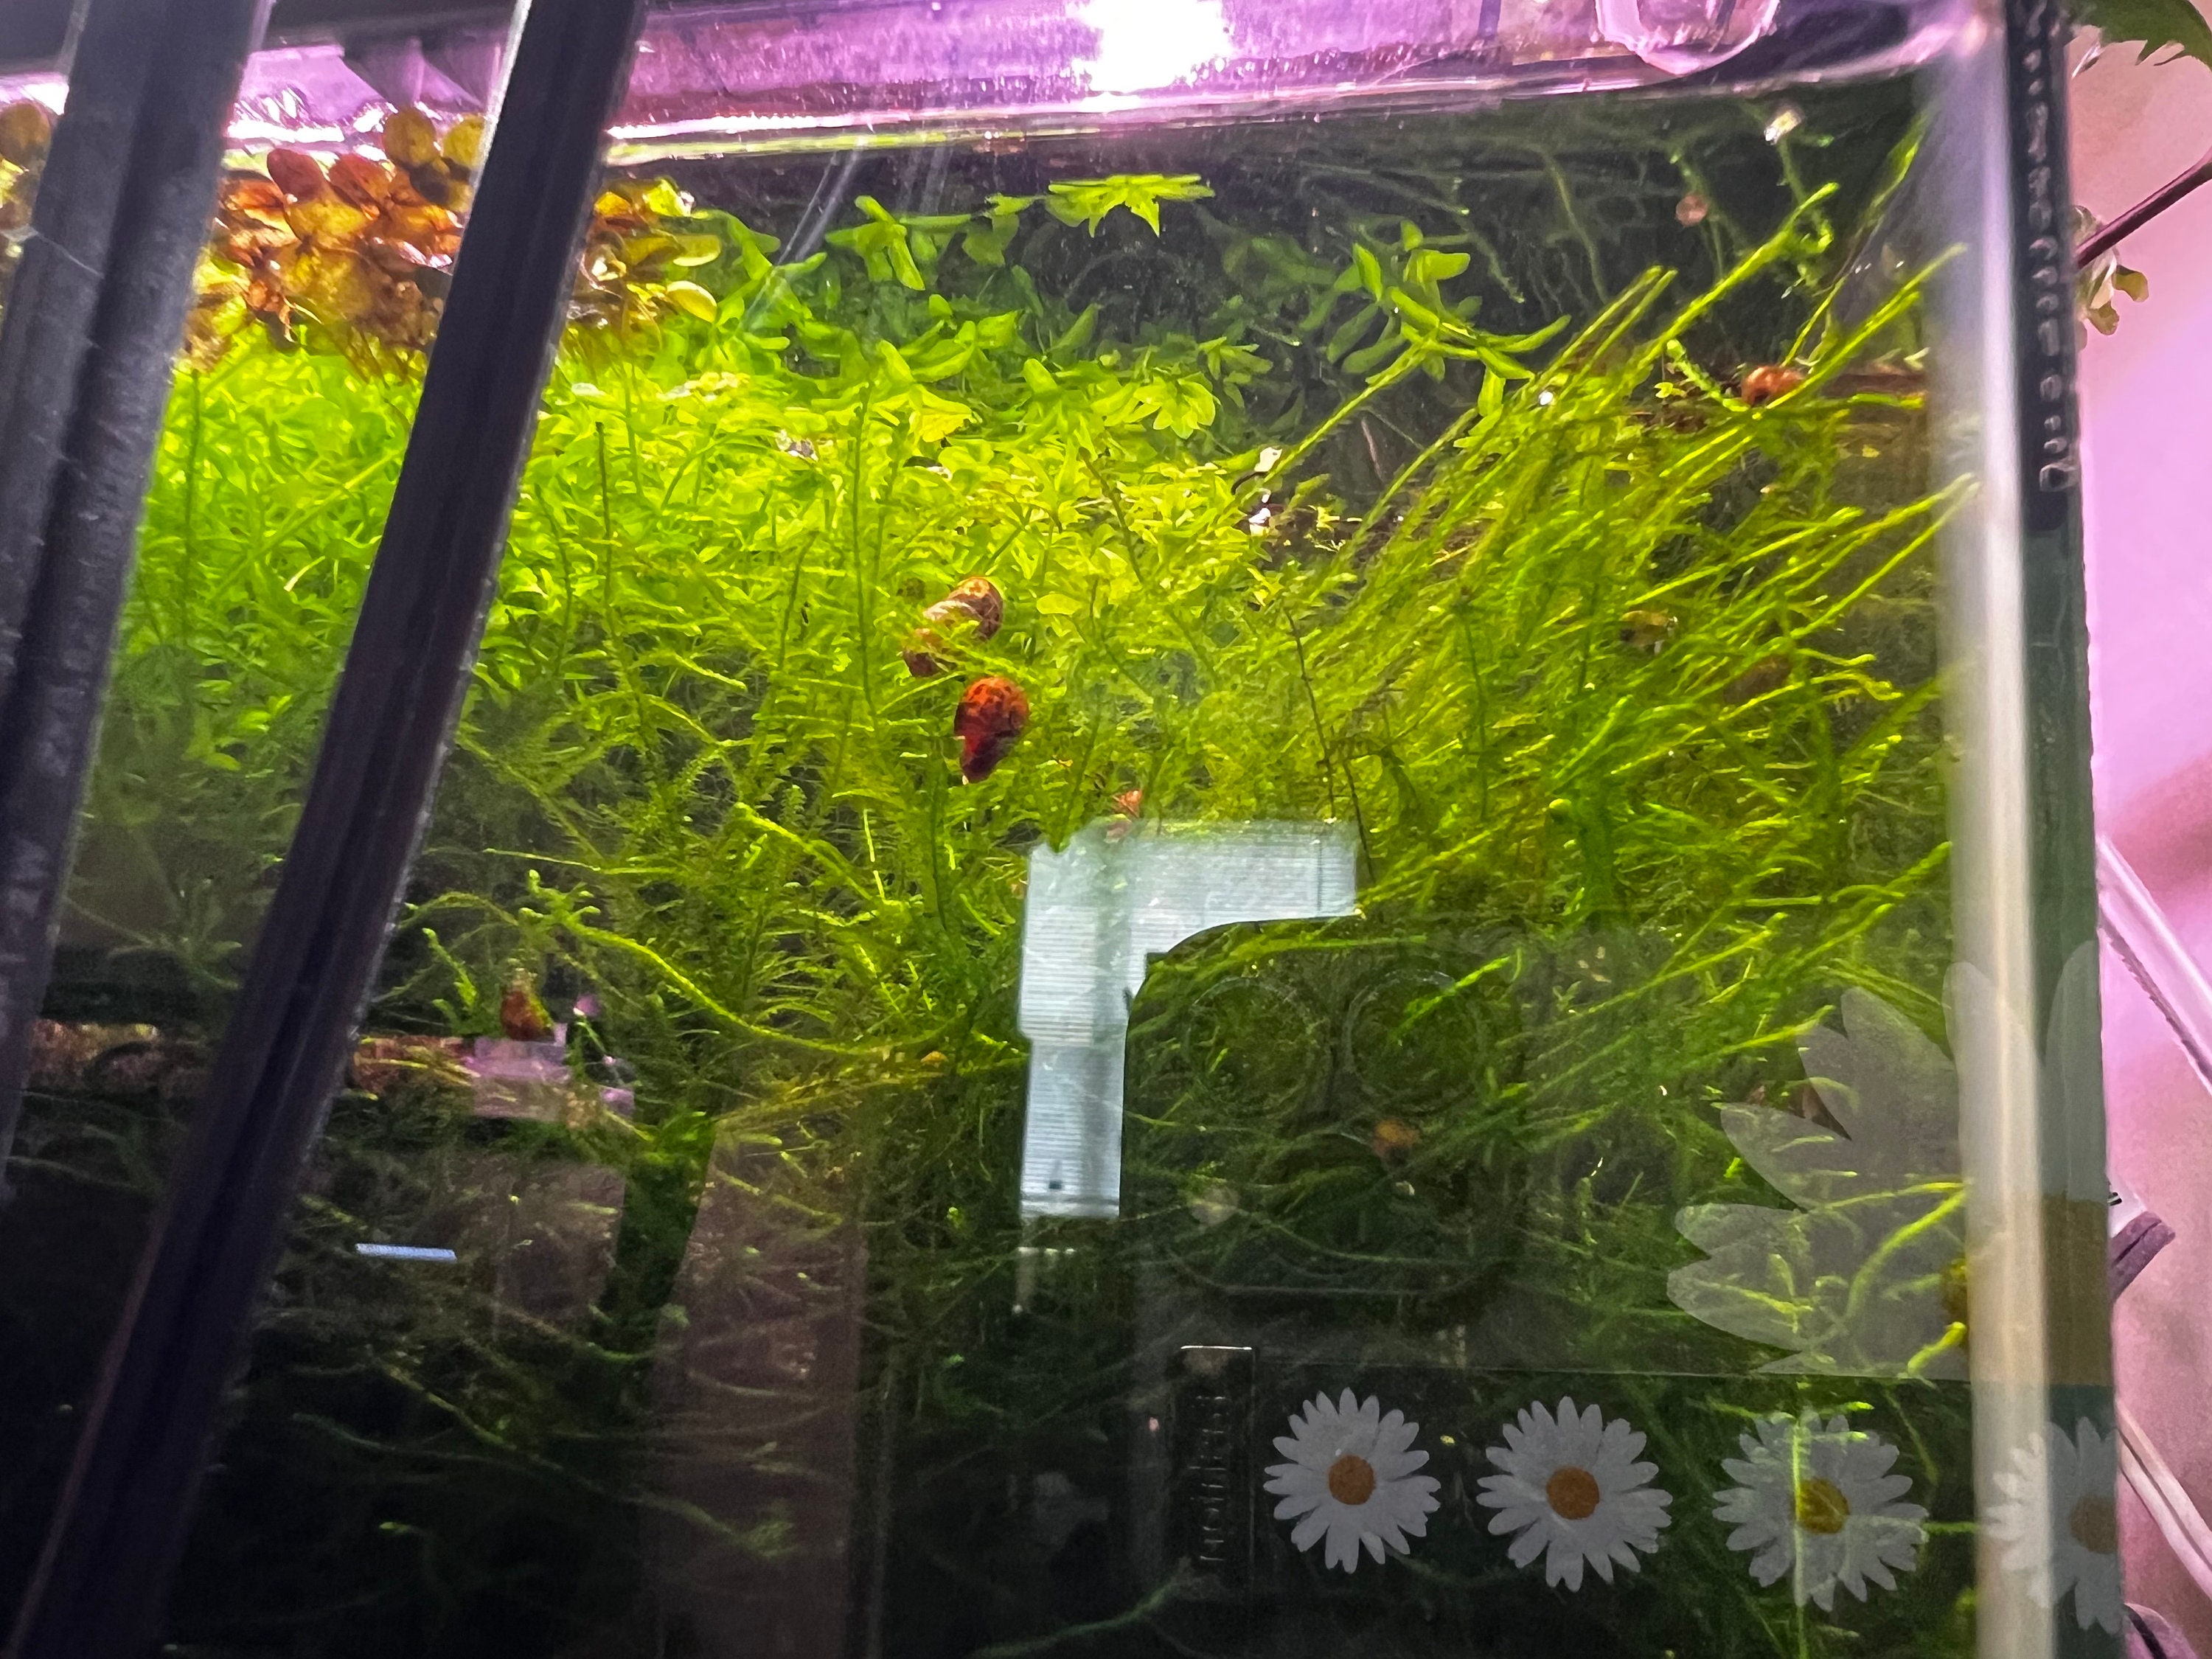 25 x Marimo Moss Balls Live Aquarium Cladophora Plant Fish Tank Shrimp  (5-7mm)